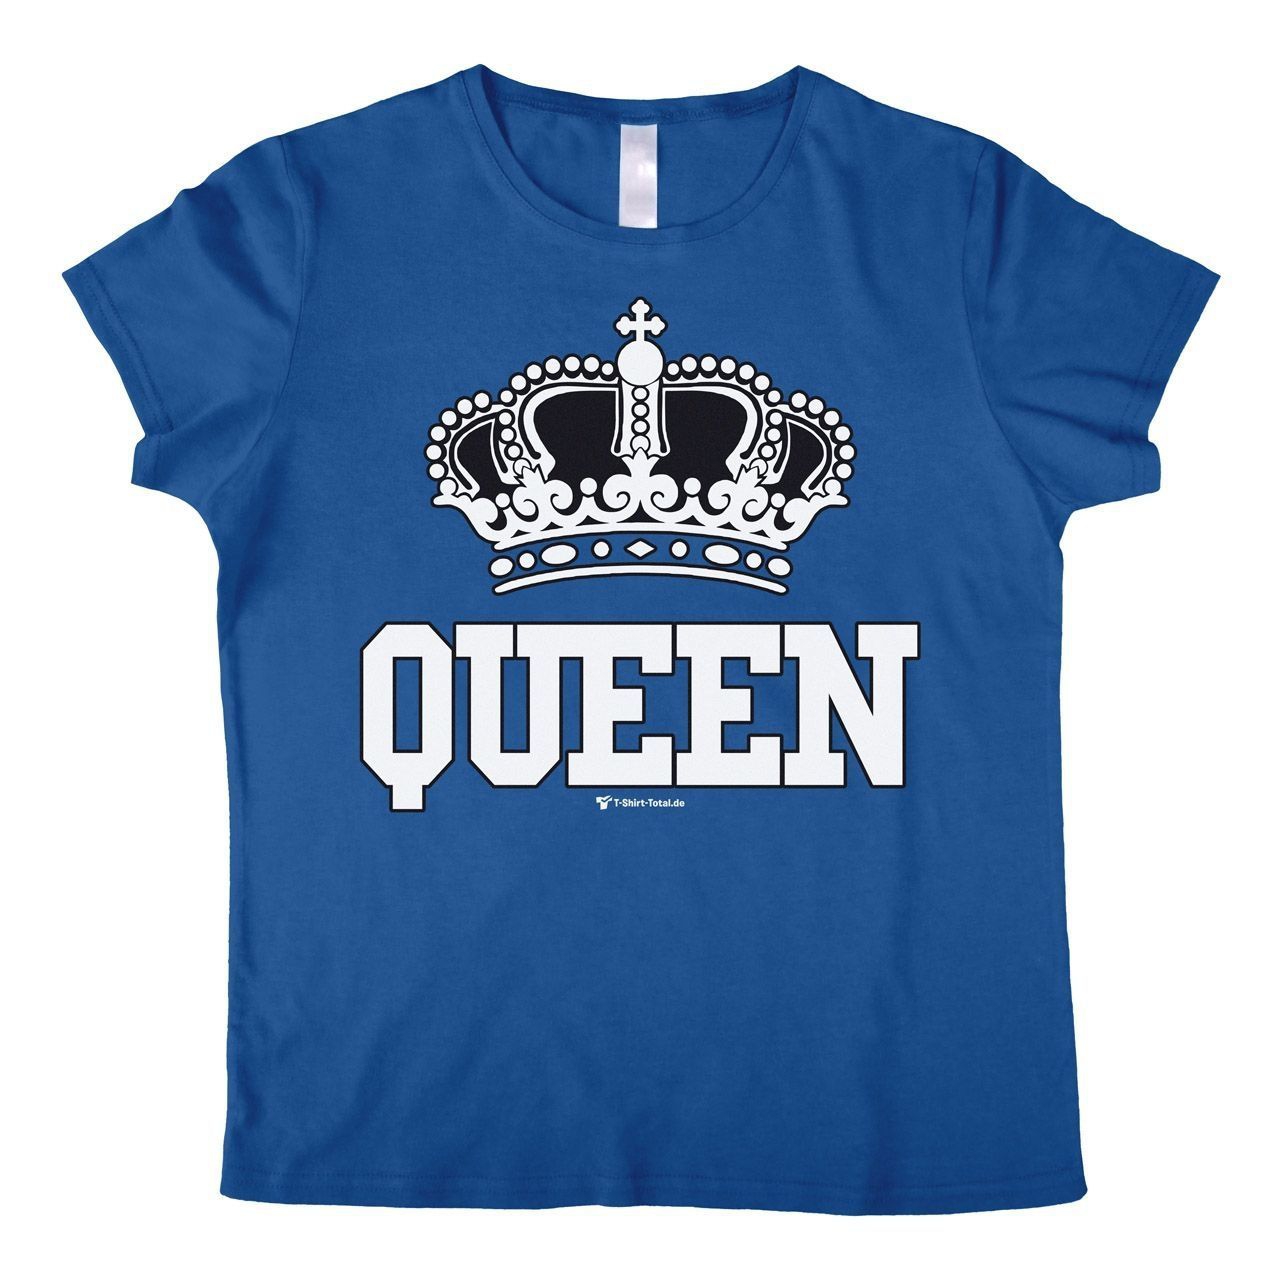 Queen Woman T-Shirt royal Medium